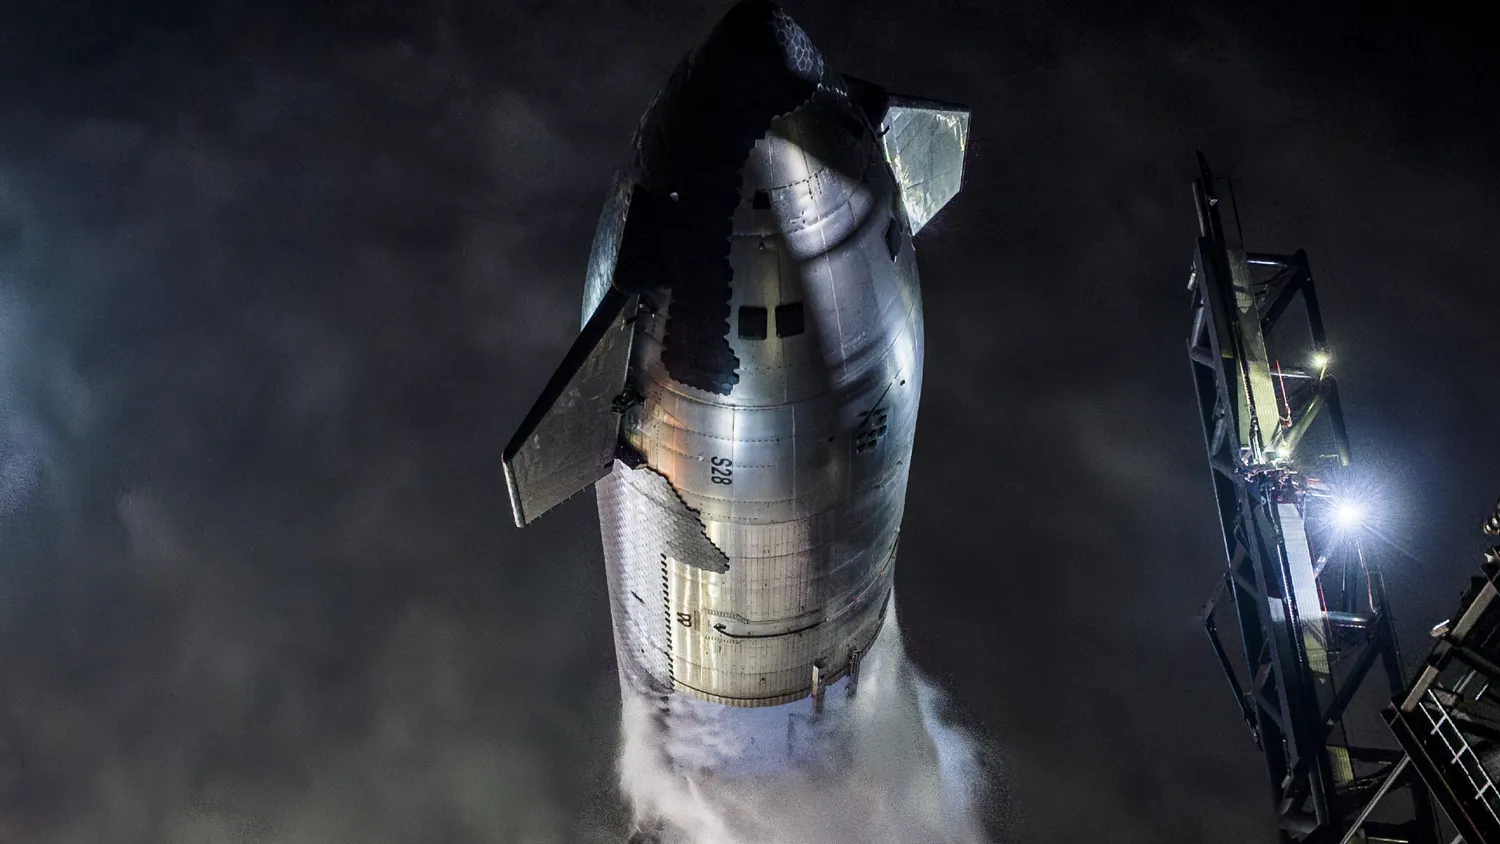 eine große schwarz-silberne Rakete stößt bei Nacht Dampf aus, während sie aufrecht auf einer Startrampe steht